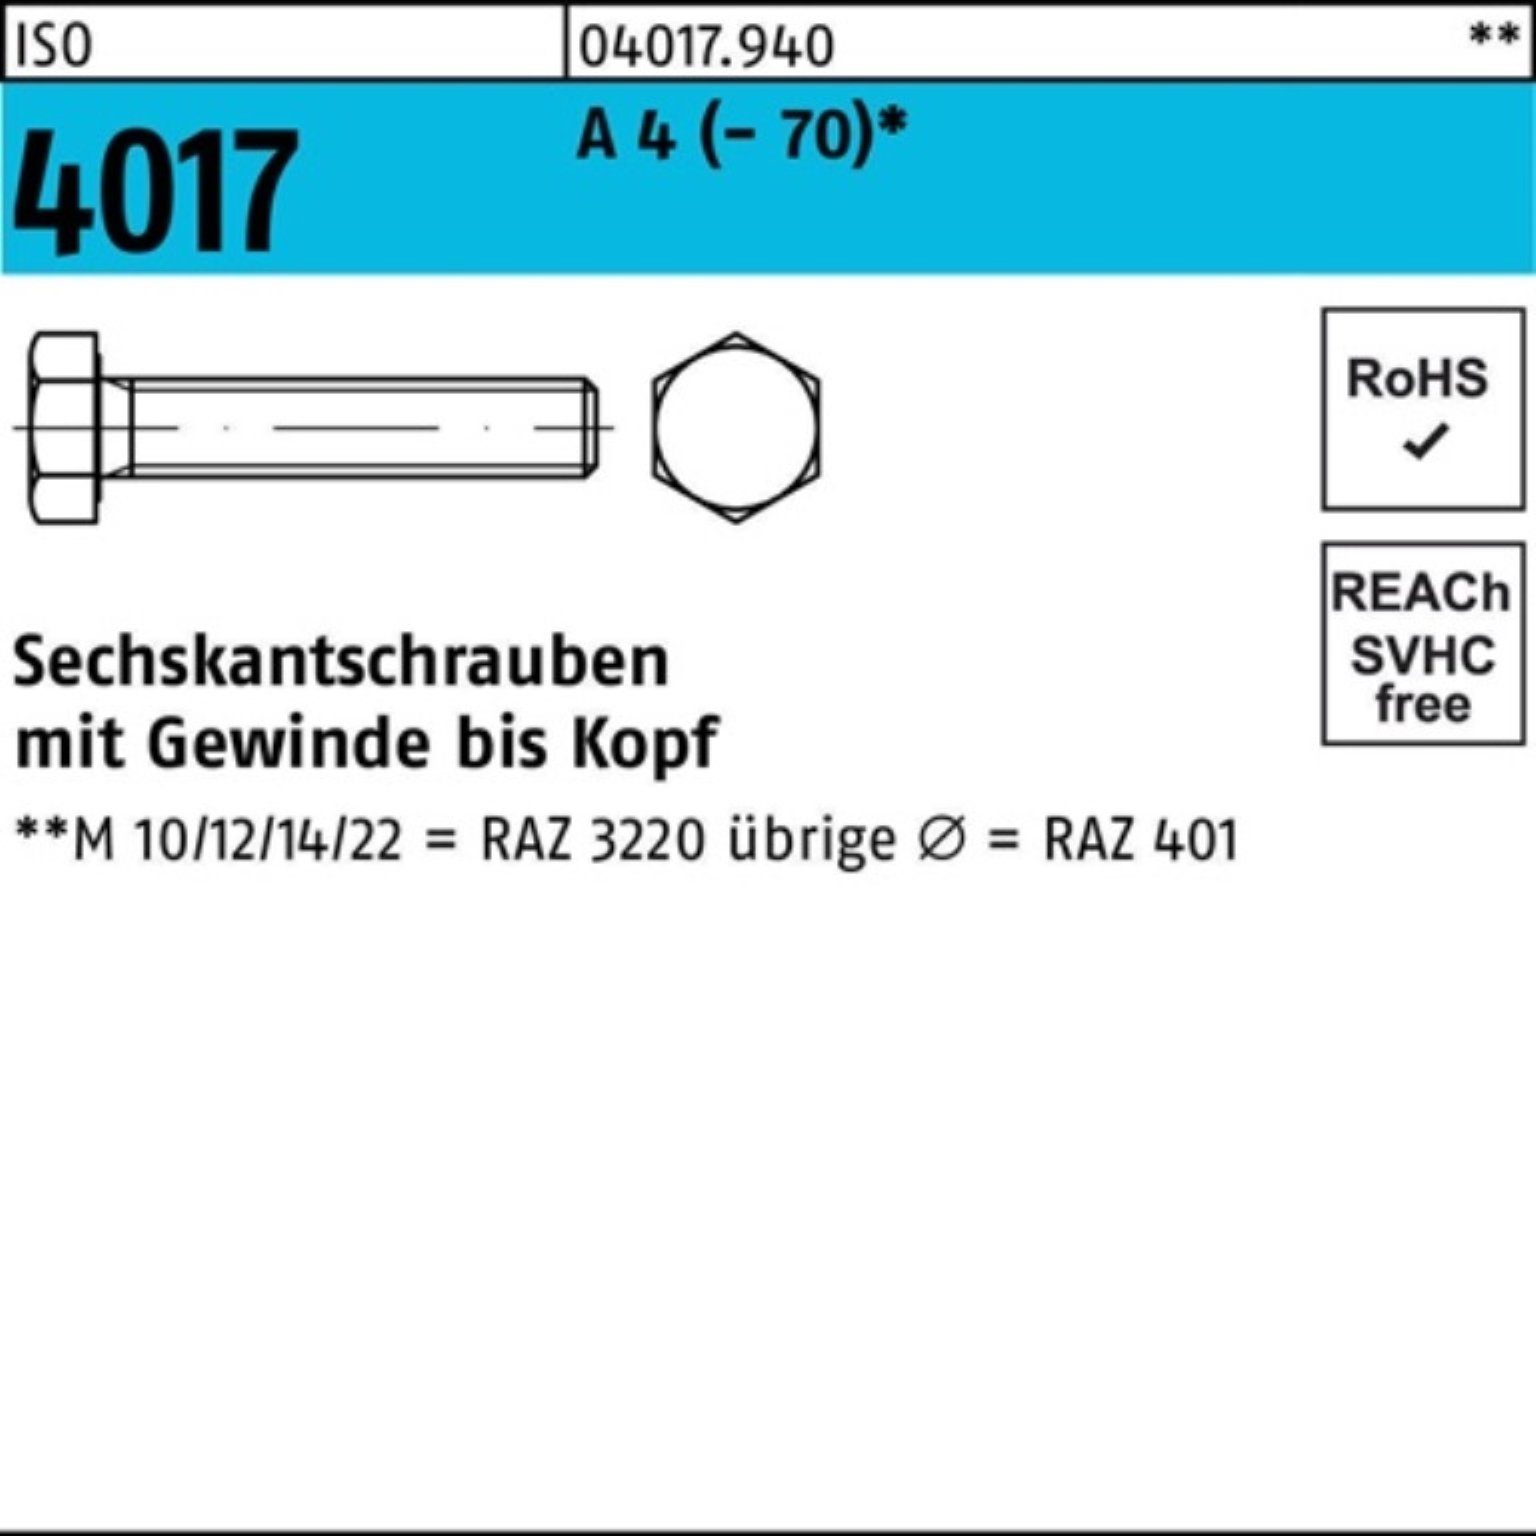 Sechskantschraube Sechskantschraube Bufab I (70) 4 M18x A 100er VG 4017 Pack Stück ISO 1 75